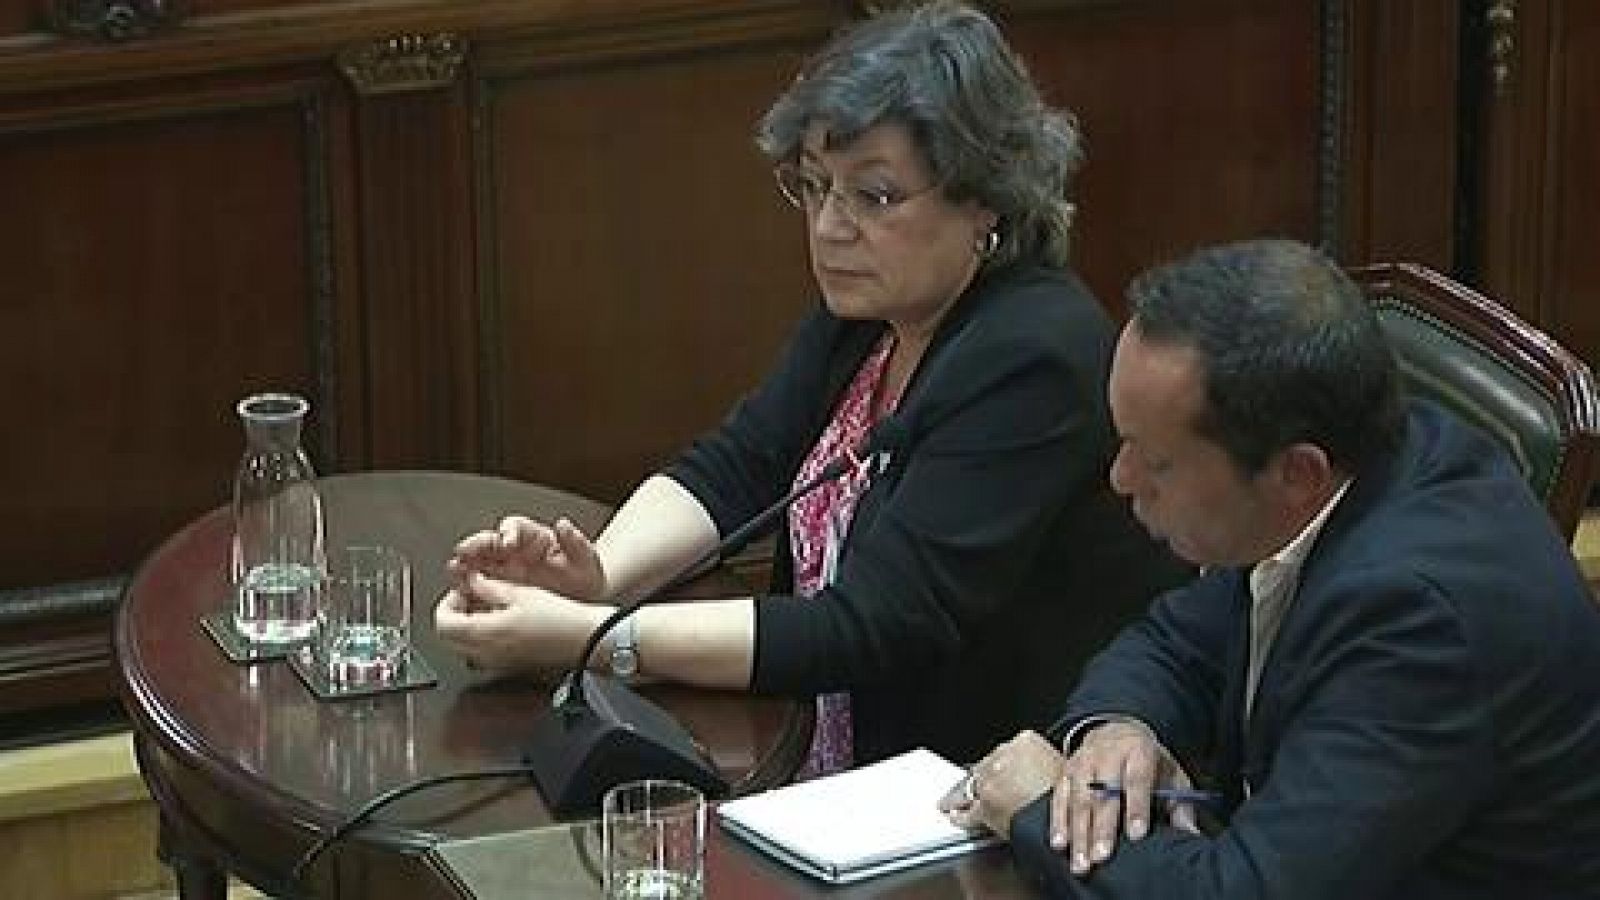 Juicio procés: La europarlamentaria portuguesa Ana Gomes declara que Junqueras y Romeva defendían una "solución negociada"